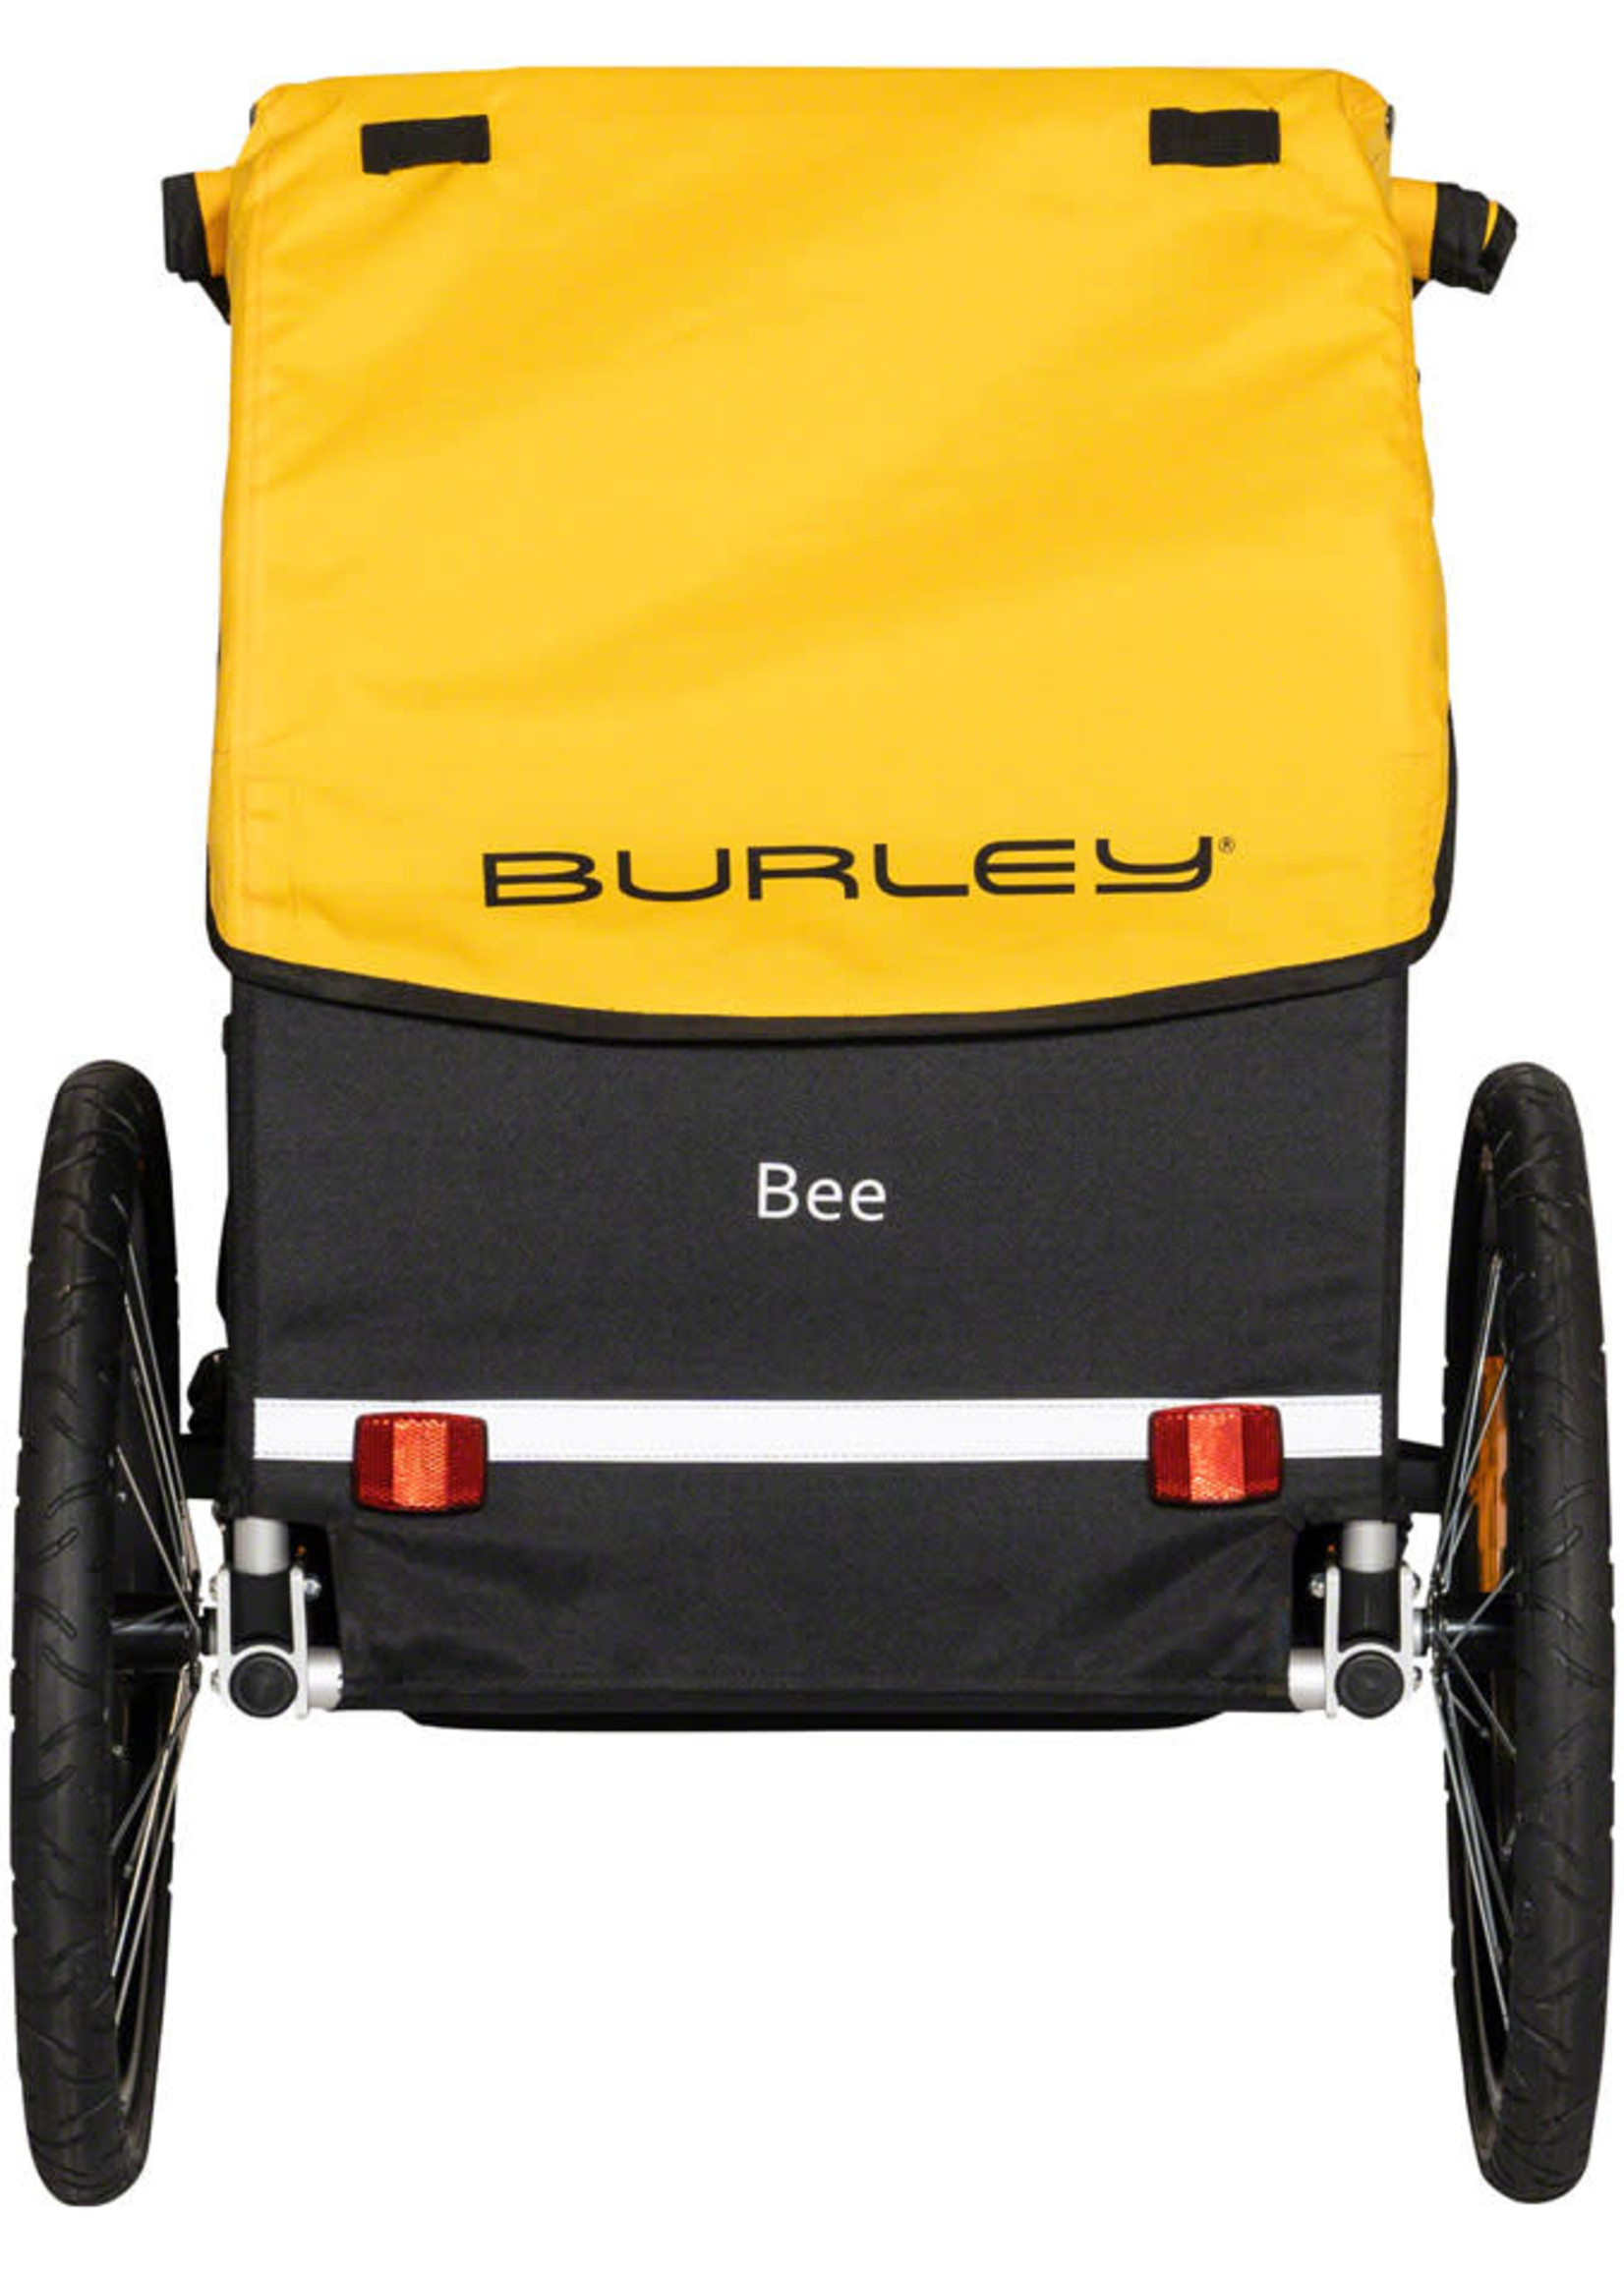 Burley Burley Bee Child Trailer - Single, Yellow